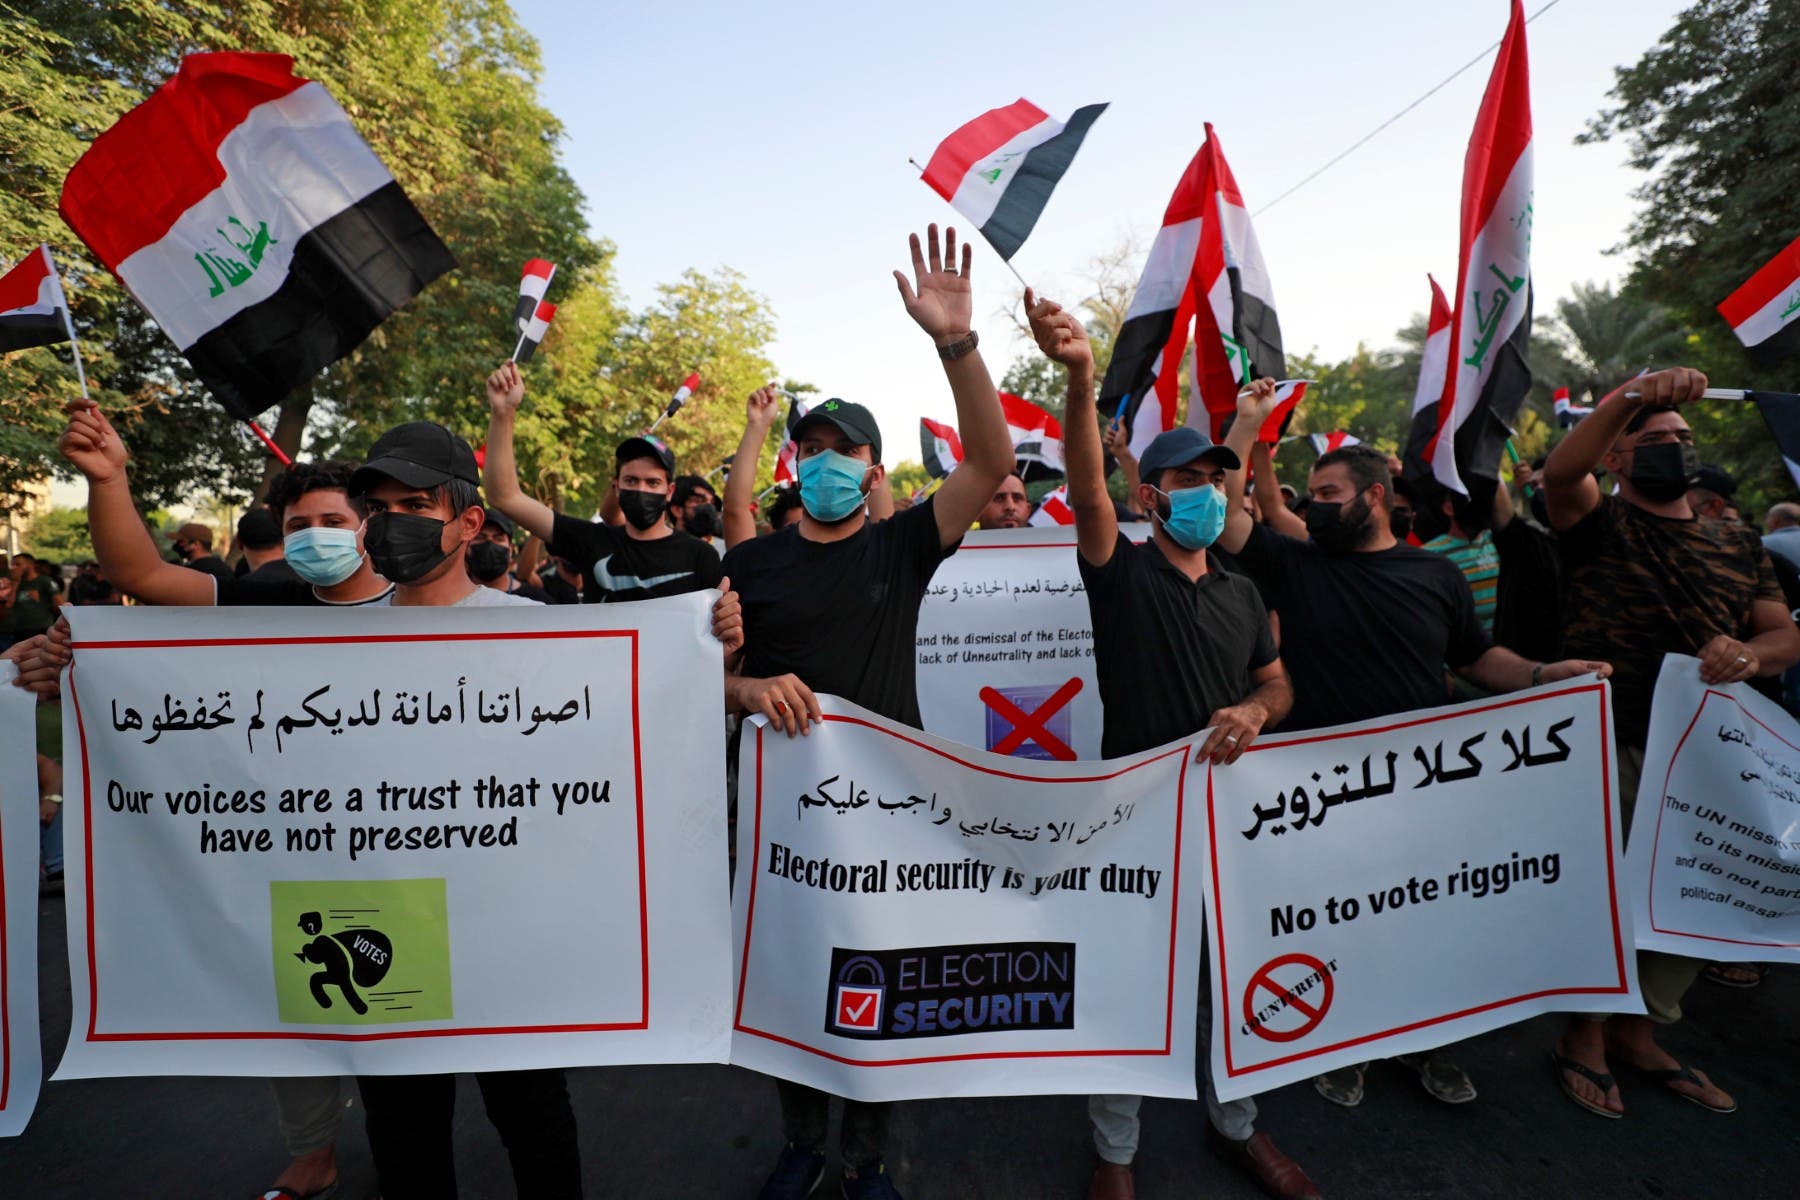 من تظاهرة لأنصار الحشد ضد الانتخابات النيابية في العراق (فرانس برس)